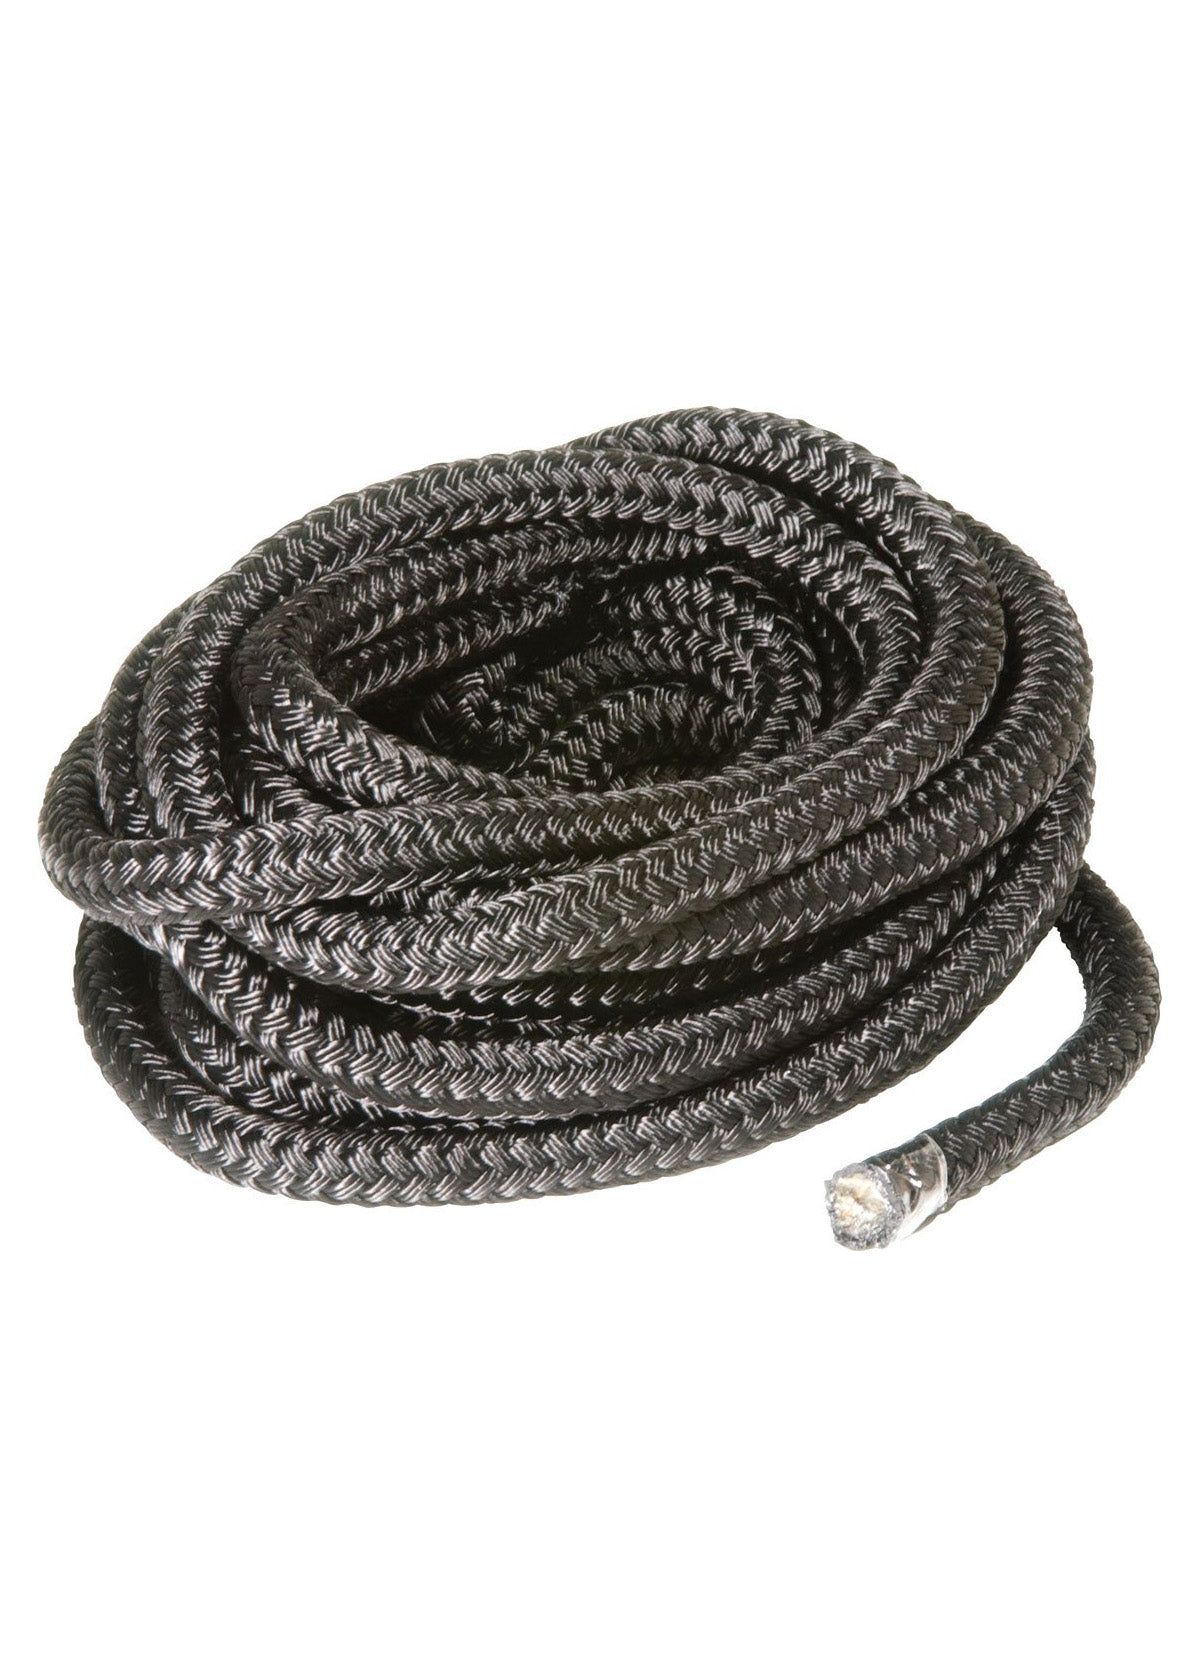 Rope - Double Braid 12mm Solid Black - Per/Meter